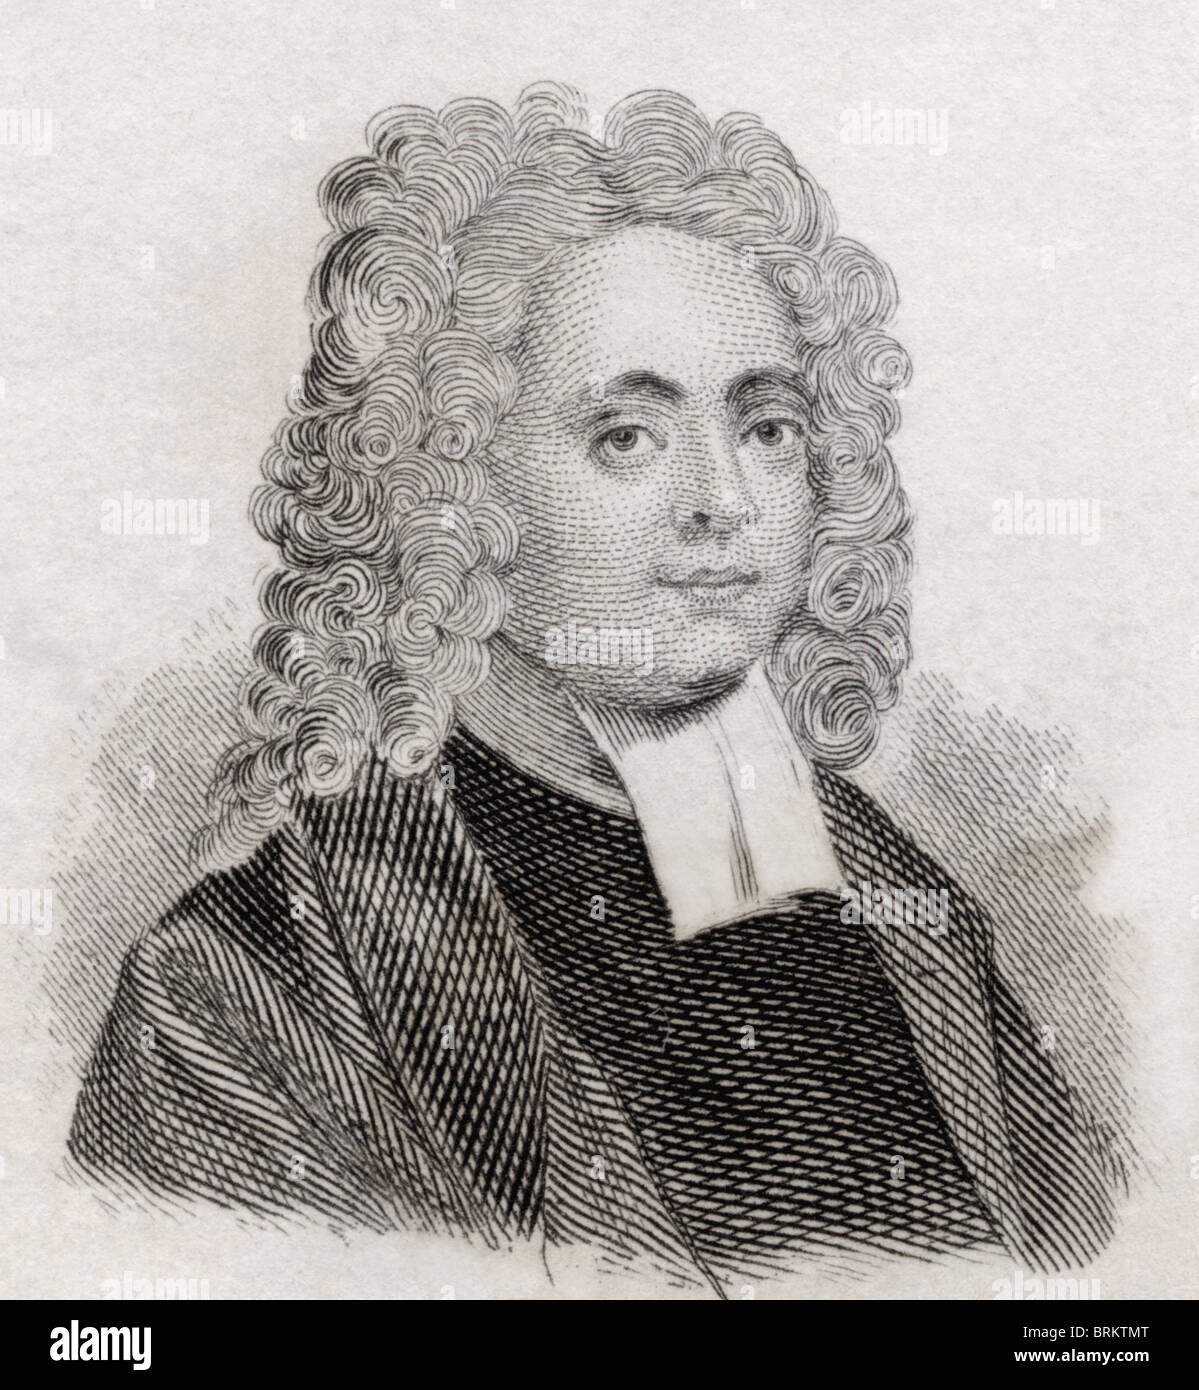 William Broome, 1689-1745. Poète et traducteur français. Le Dictionnaire historique de Crabb publié en 1825. Banque D'Images